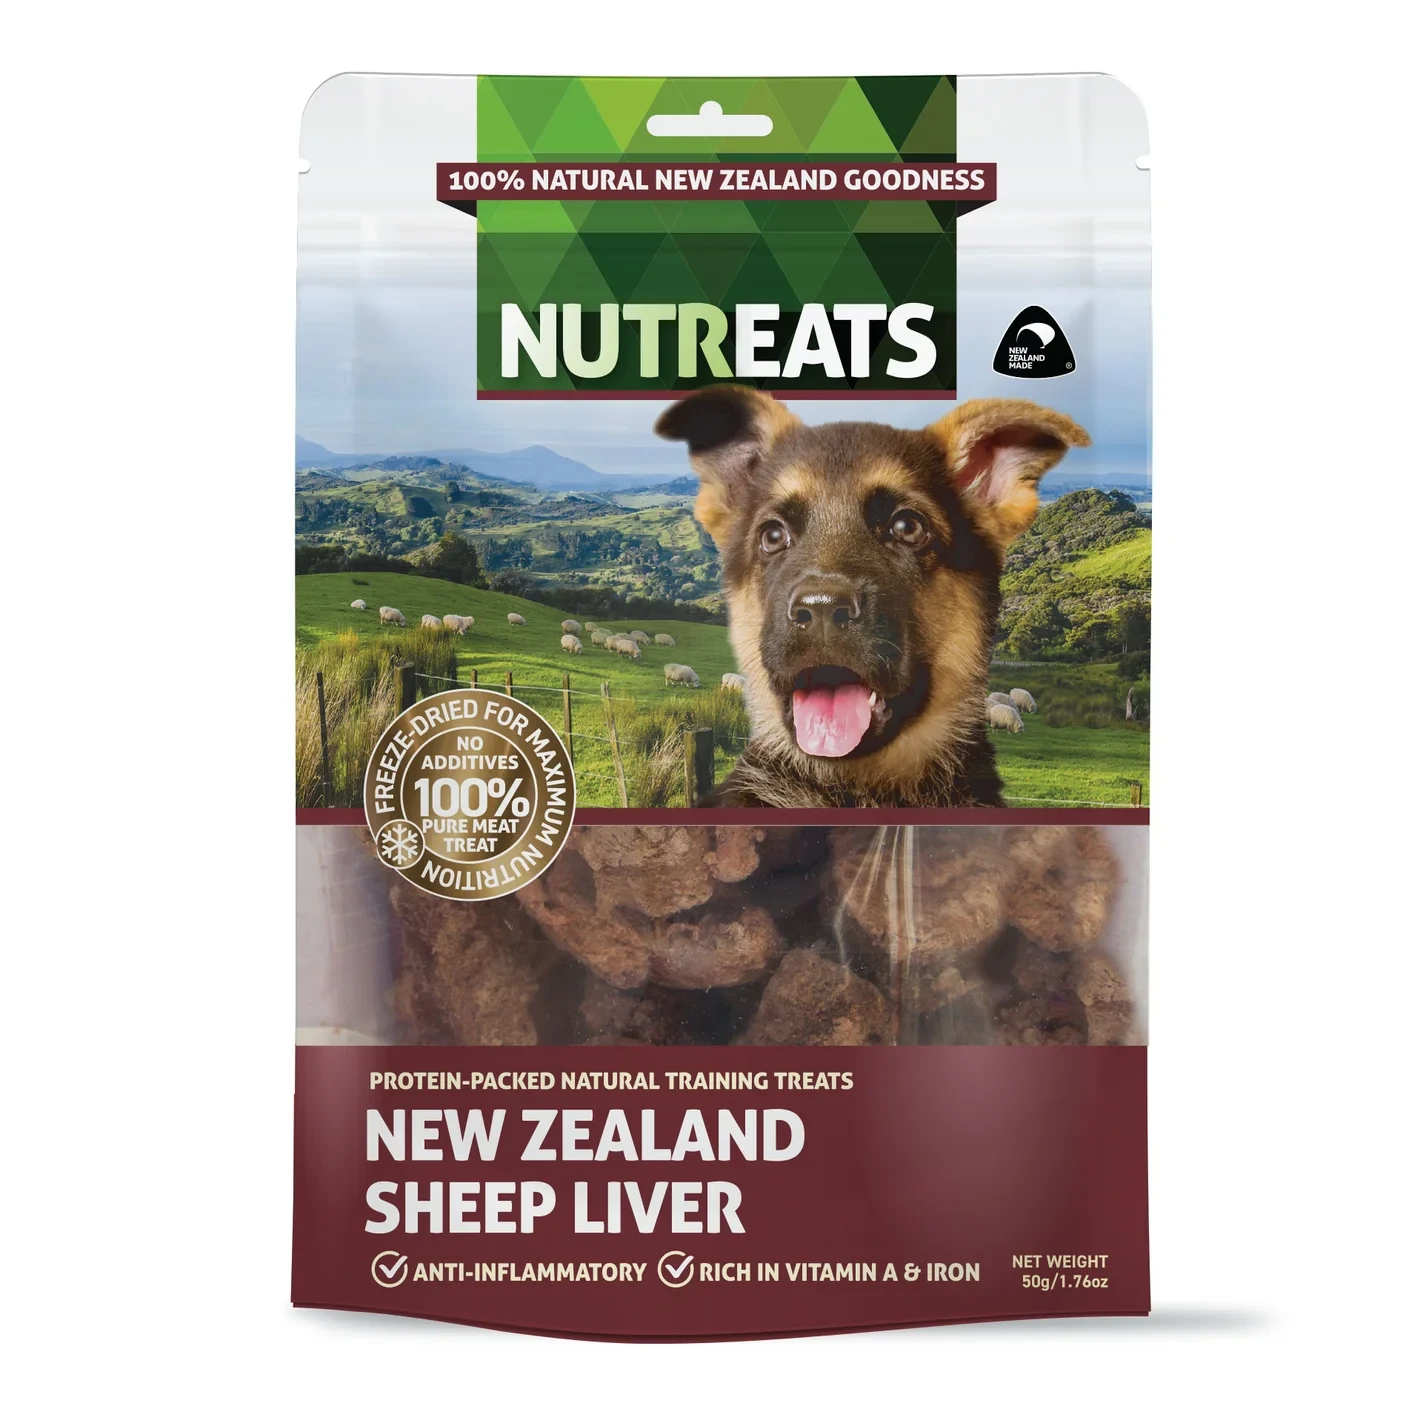 Freeze-dried New Zealand Sheep Liver dog treats